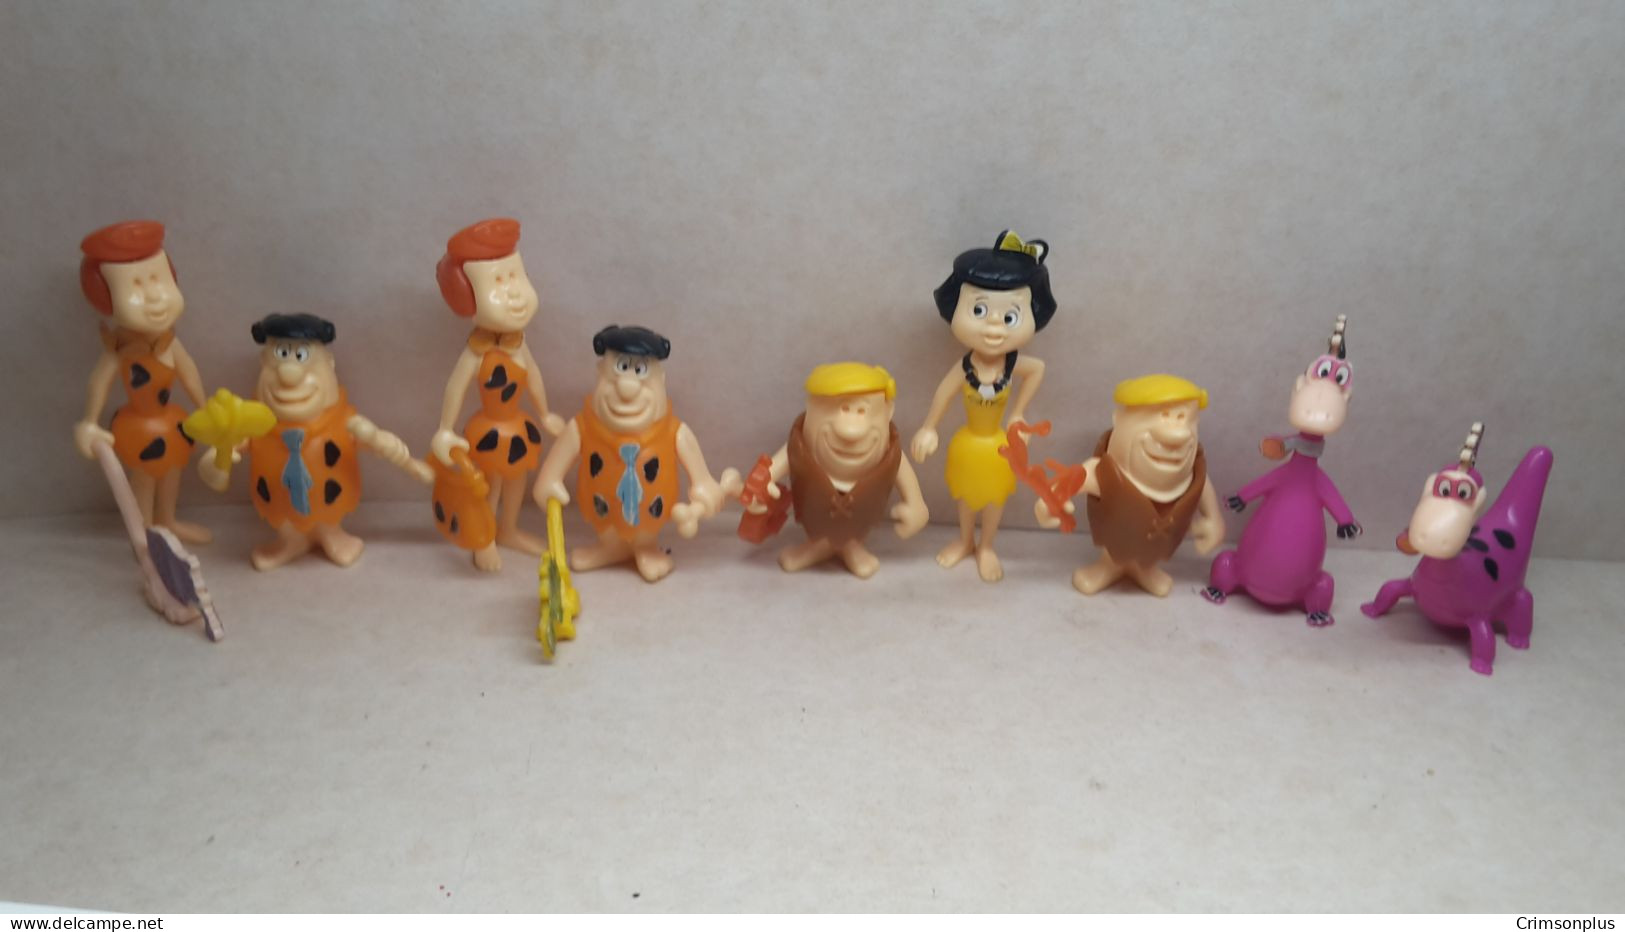 1995 Ferrero - Kinder Surprise - K95 68, 69, 70, 71, 72, 73, 74, 75 & 76 The Flintstones - Complete Set - Monoblocs